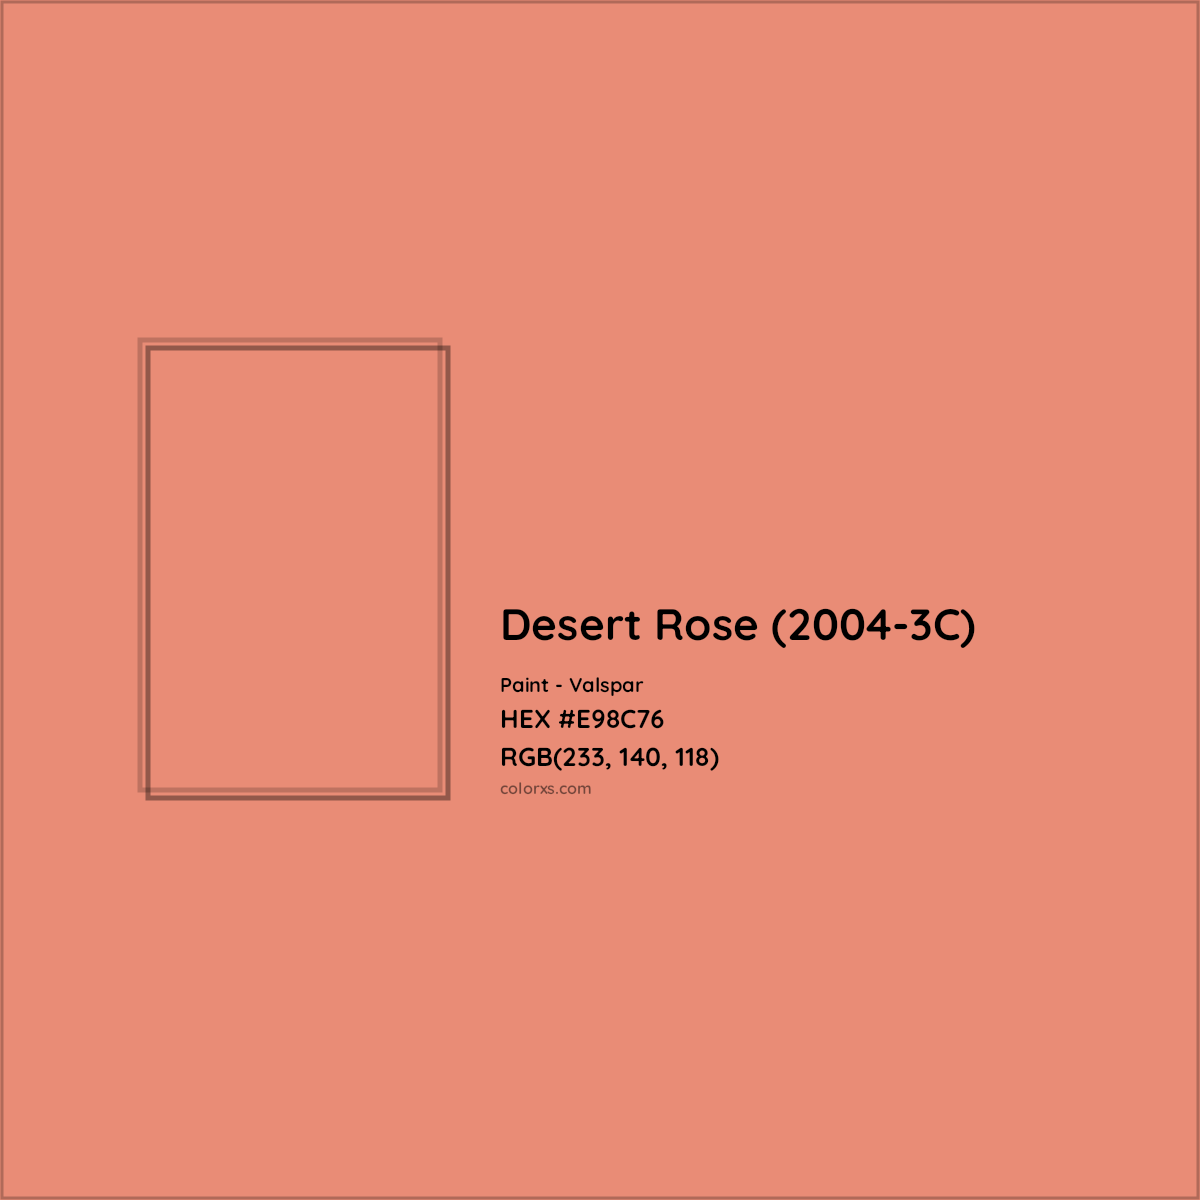 HEX #E98C76 Desert Rose (2004-3C) Paint Valspar - Color Code